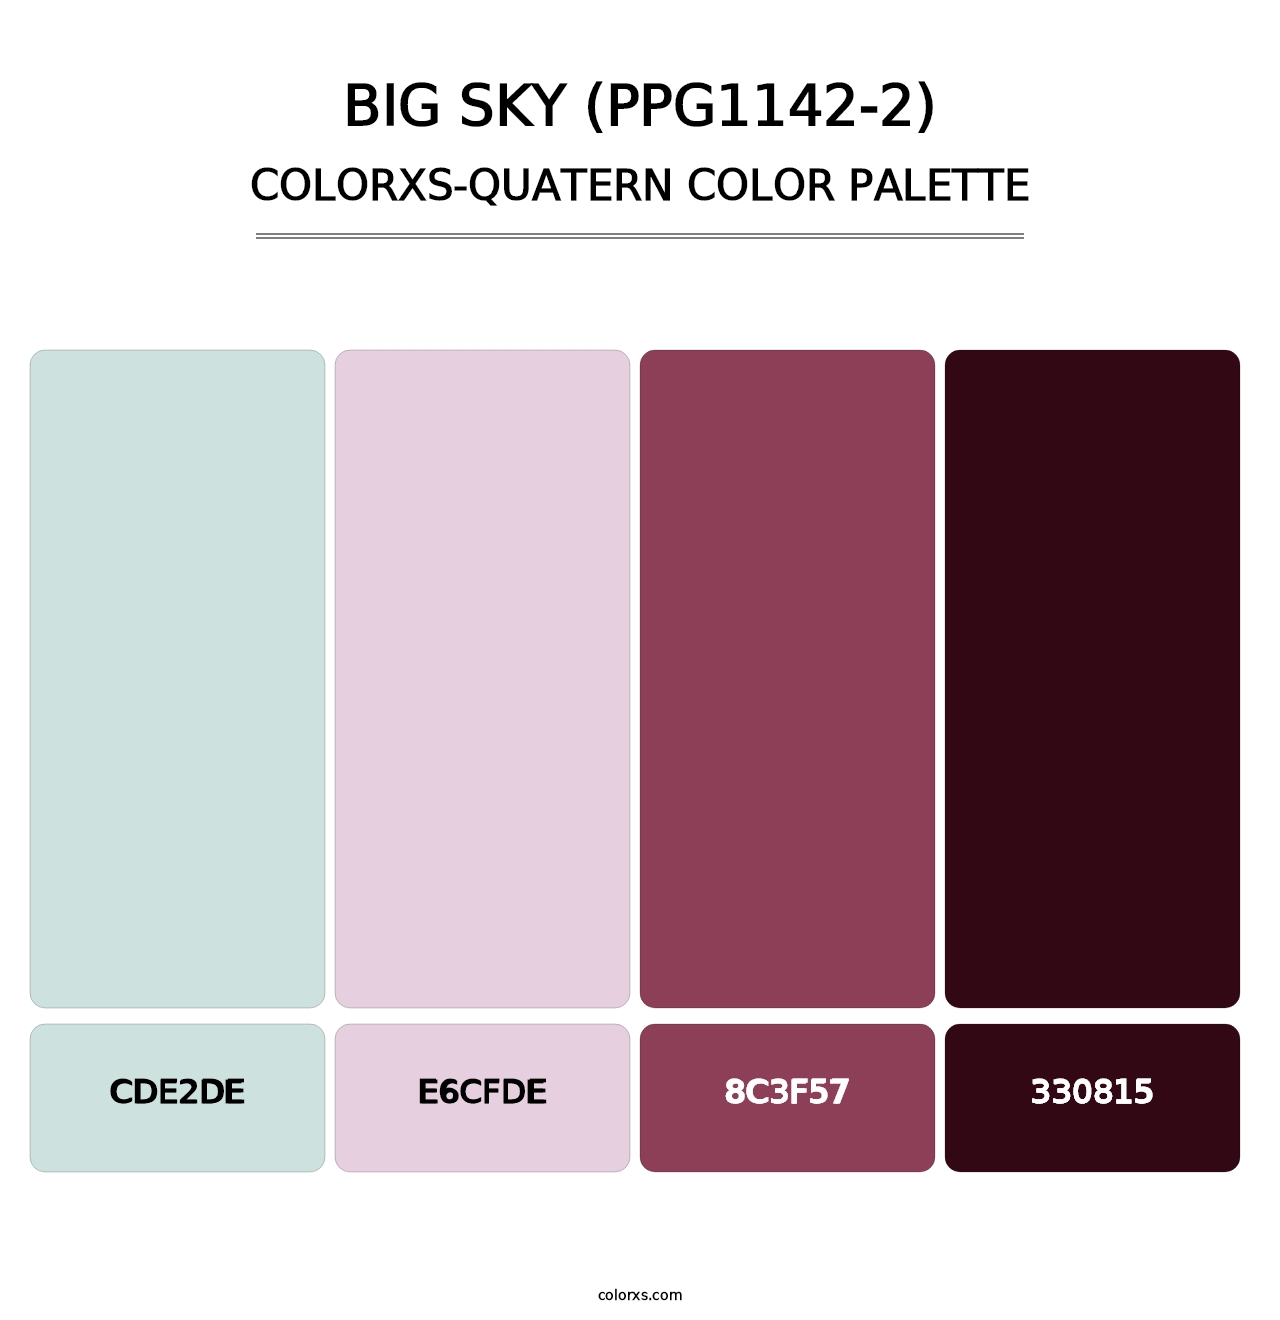 Big Sky (PPG1142-2) - Colorxs Quatern Palette